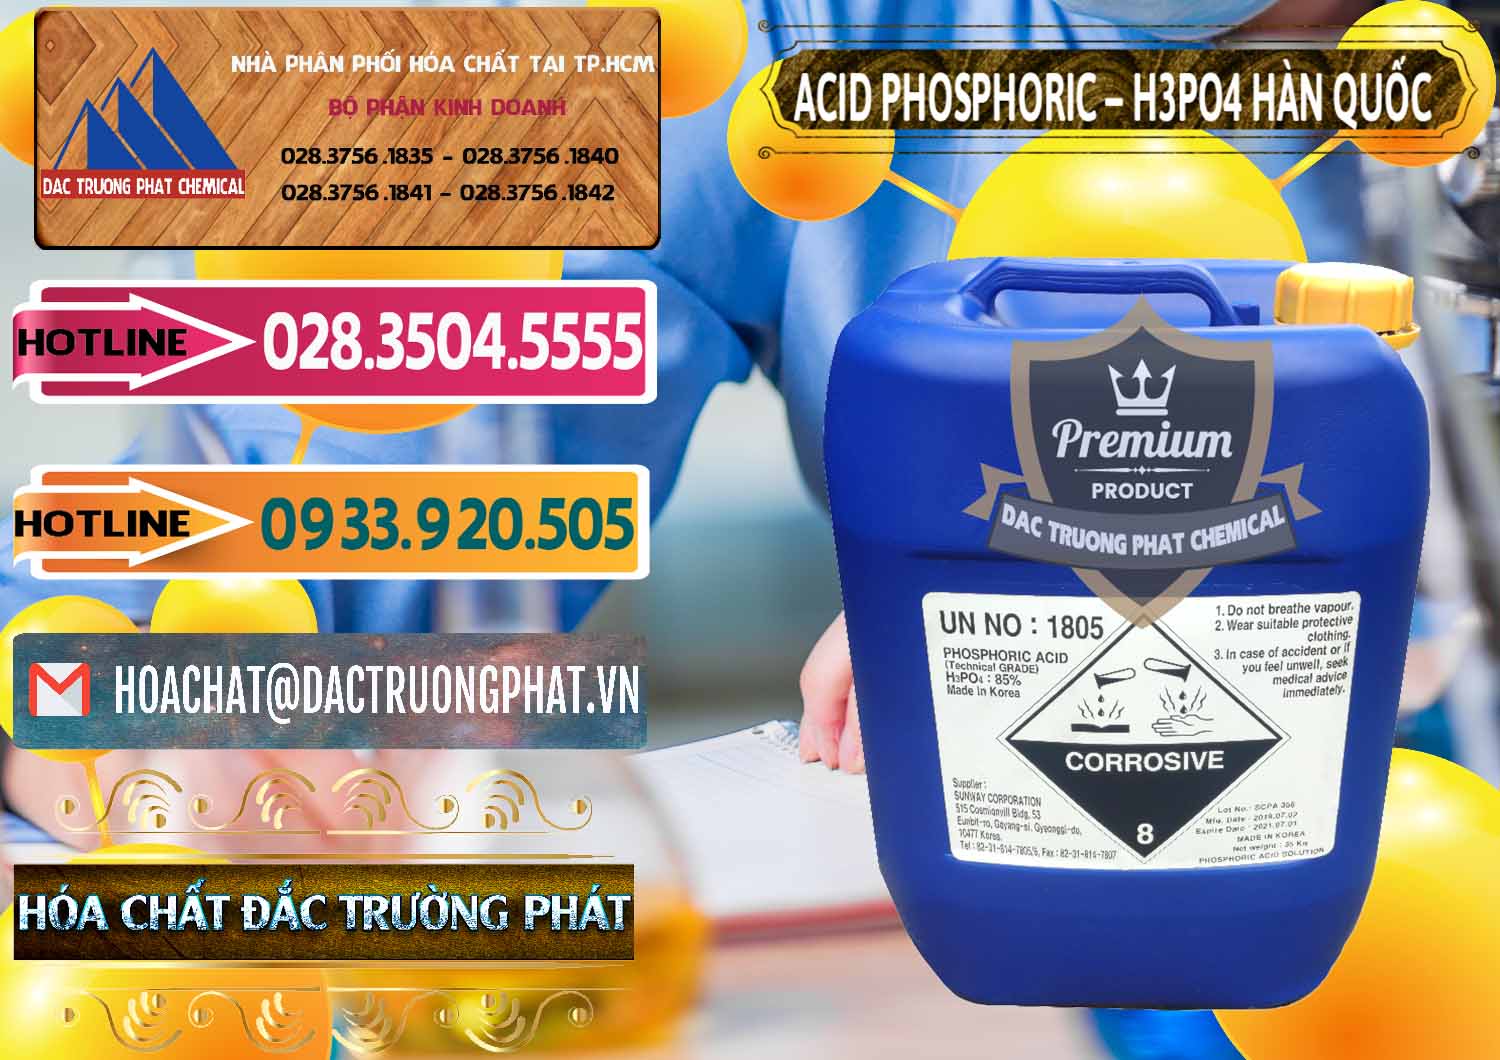 Nơi chuyên phân phối ( bán ) Acid Phosphoric – H3PO4 85% Can Xanh Hàn Quốc Korea - 0016 - Cty chuyên cung cấp _ bán hóa chất tại TP.HCM - dactruongphat.vn